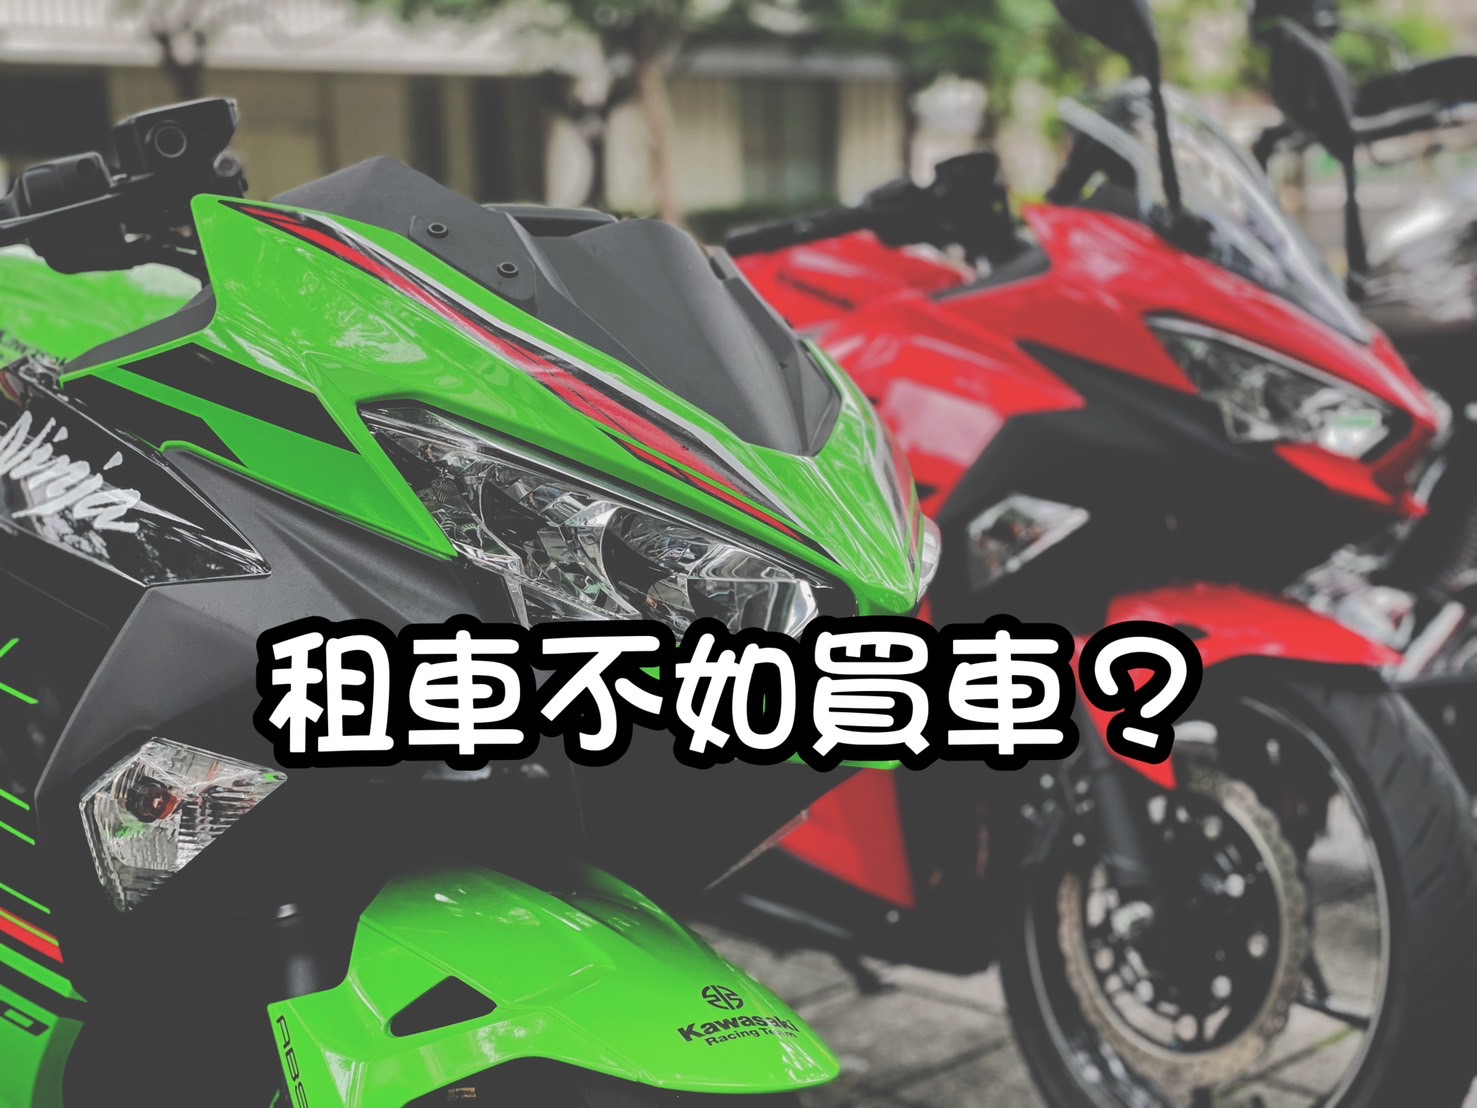 【柏霖動機Kawasak職人-阿弘】KAWASAKI NINJA400 - 「Webike-摩托車市」 租車不如買車 買的安心又放心